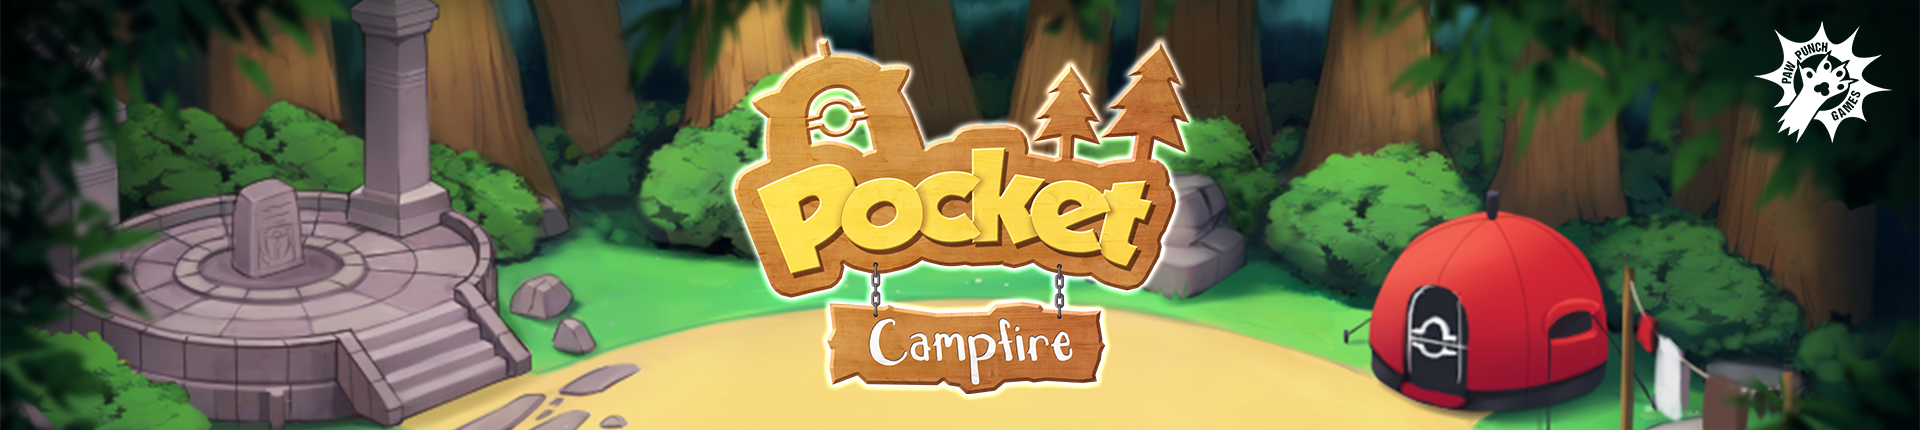 Pocket Campfire poster